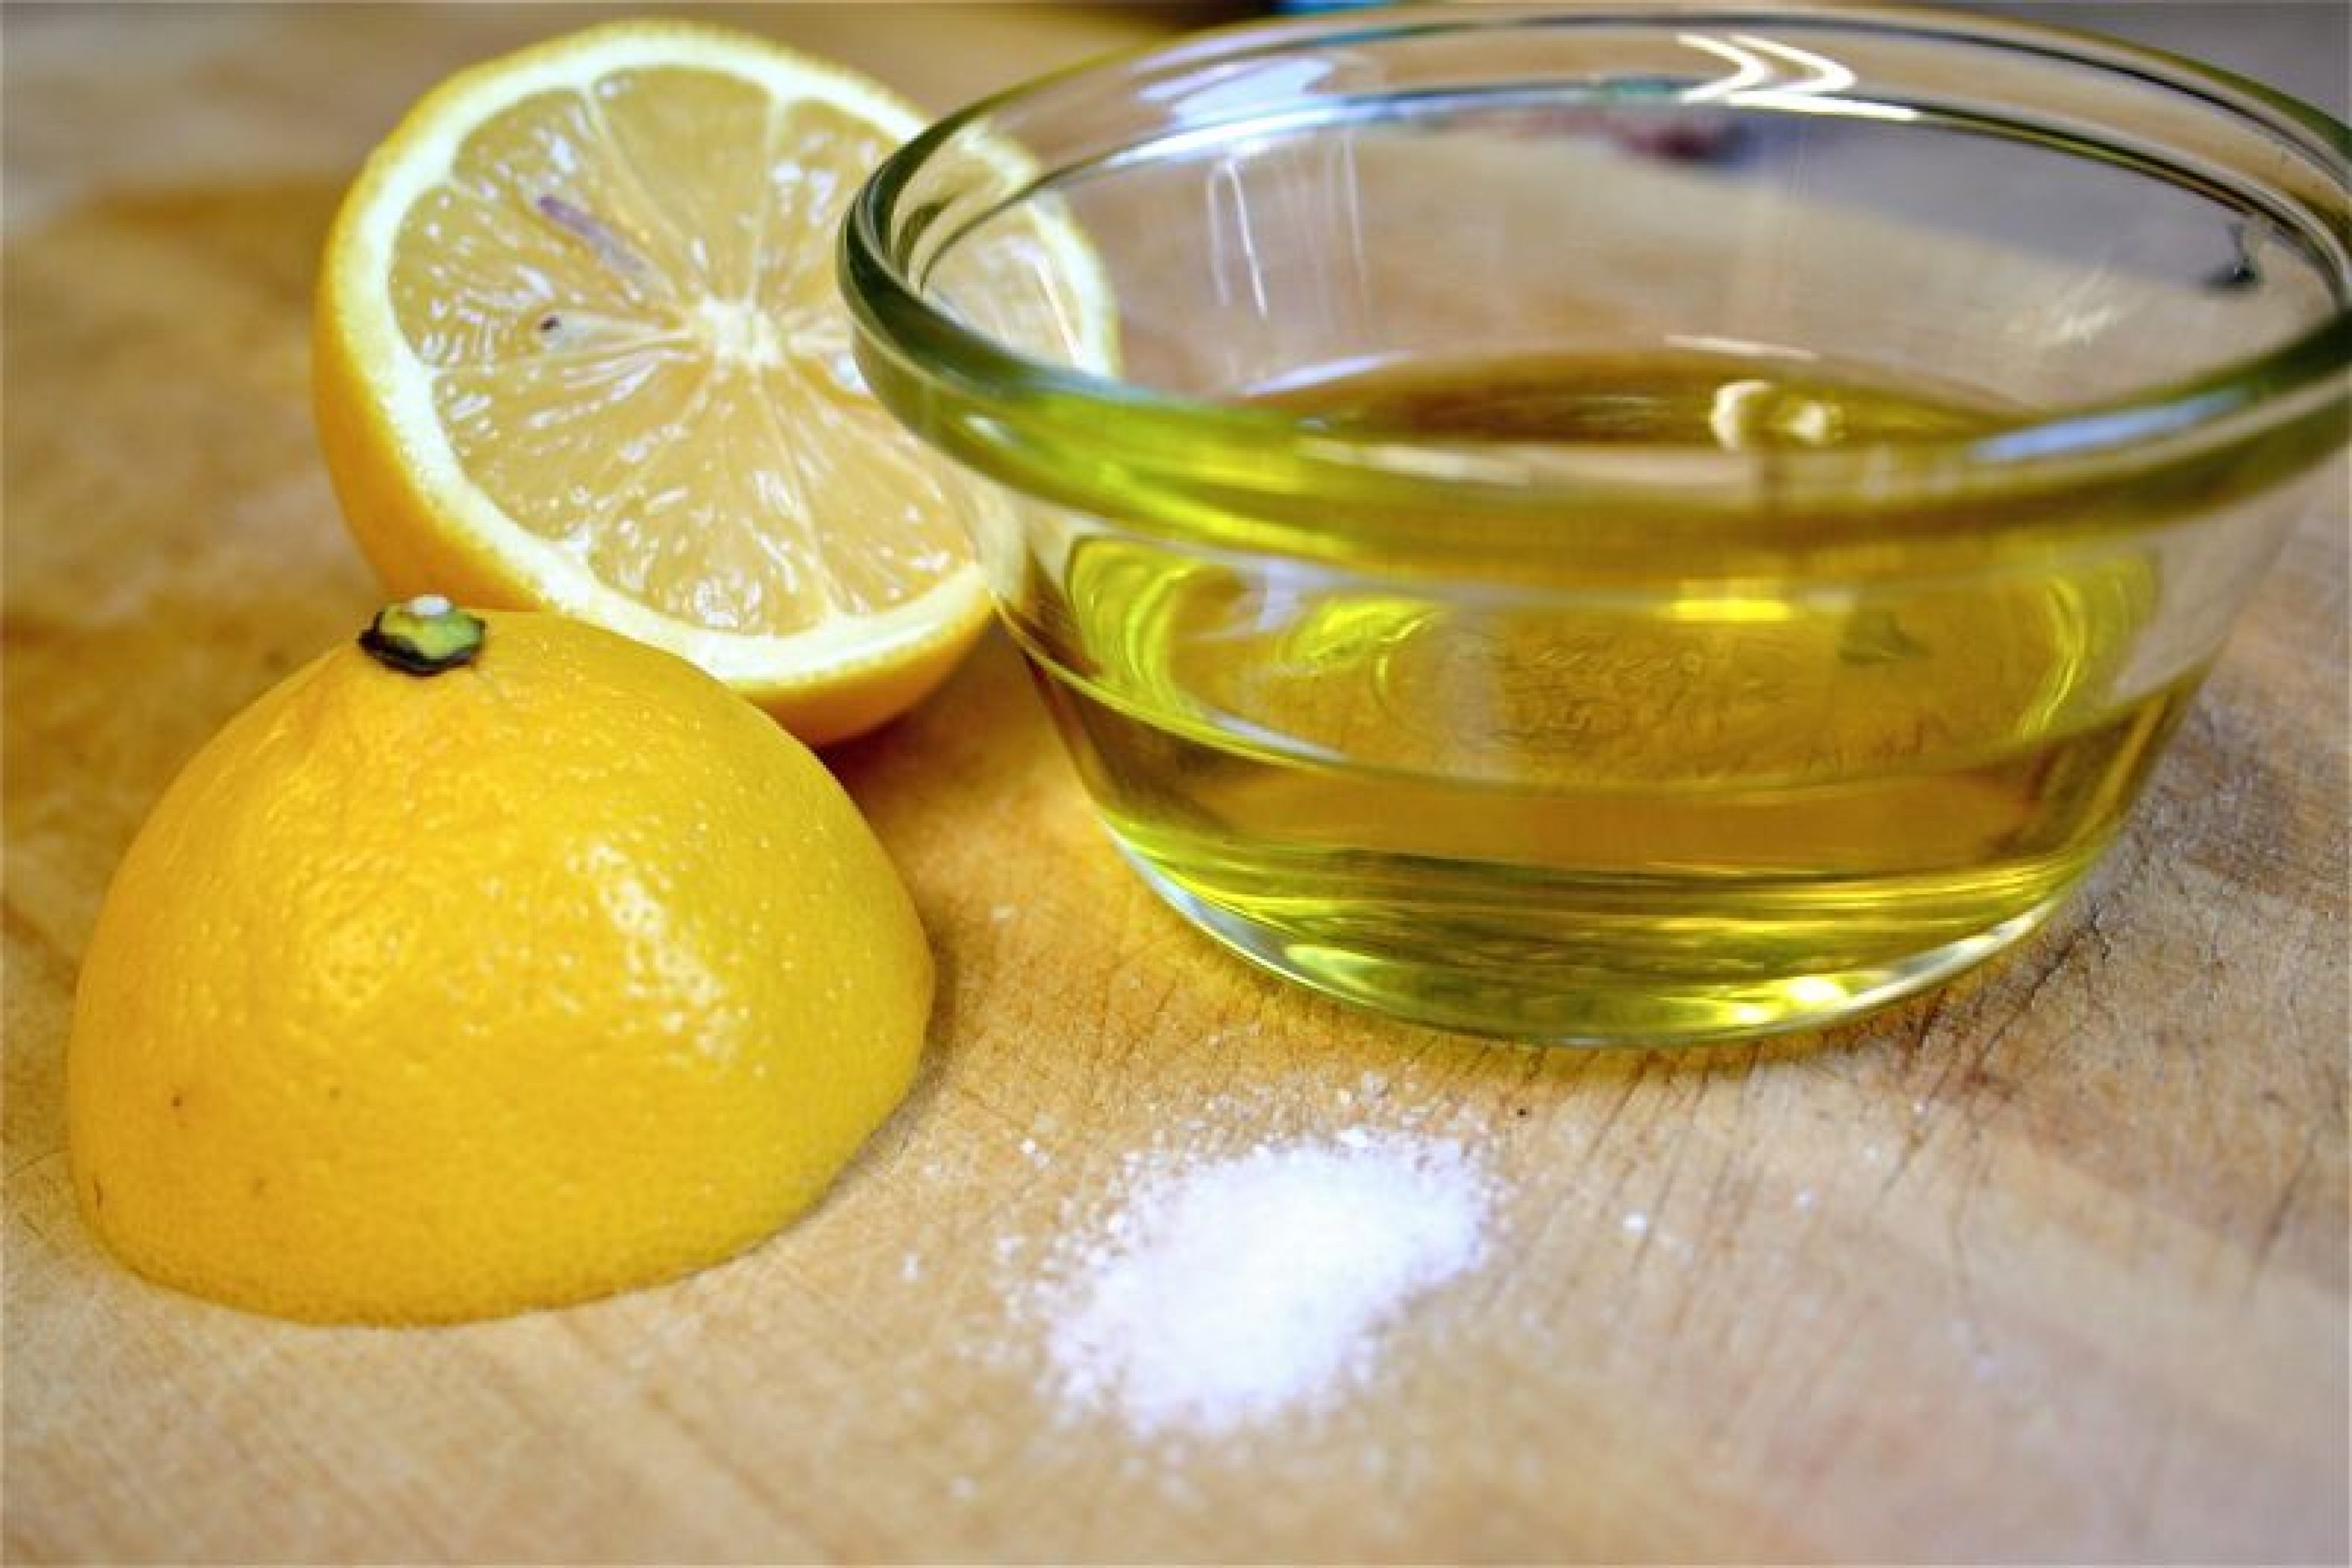 Natalia Selegean e la cură de detoxifiere cu sare amară, ulei de măsline şi lămâie